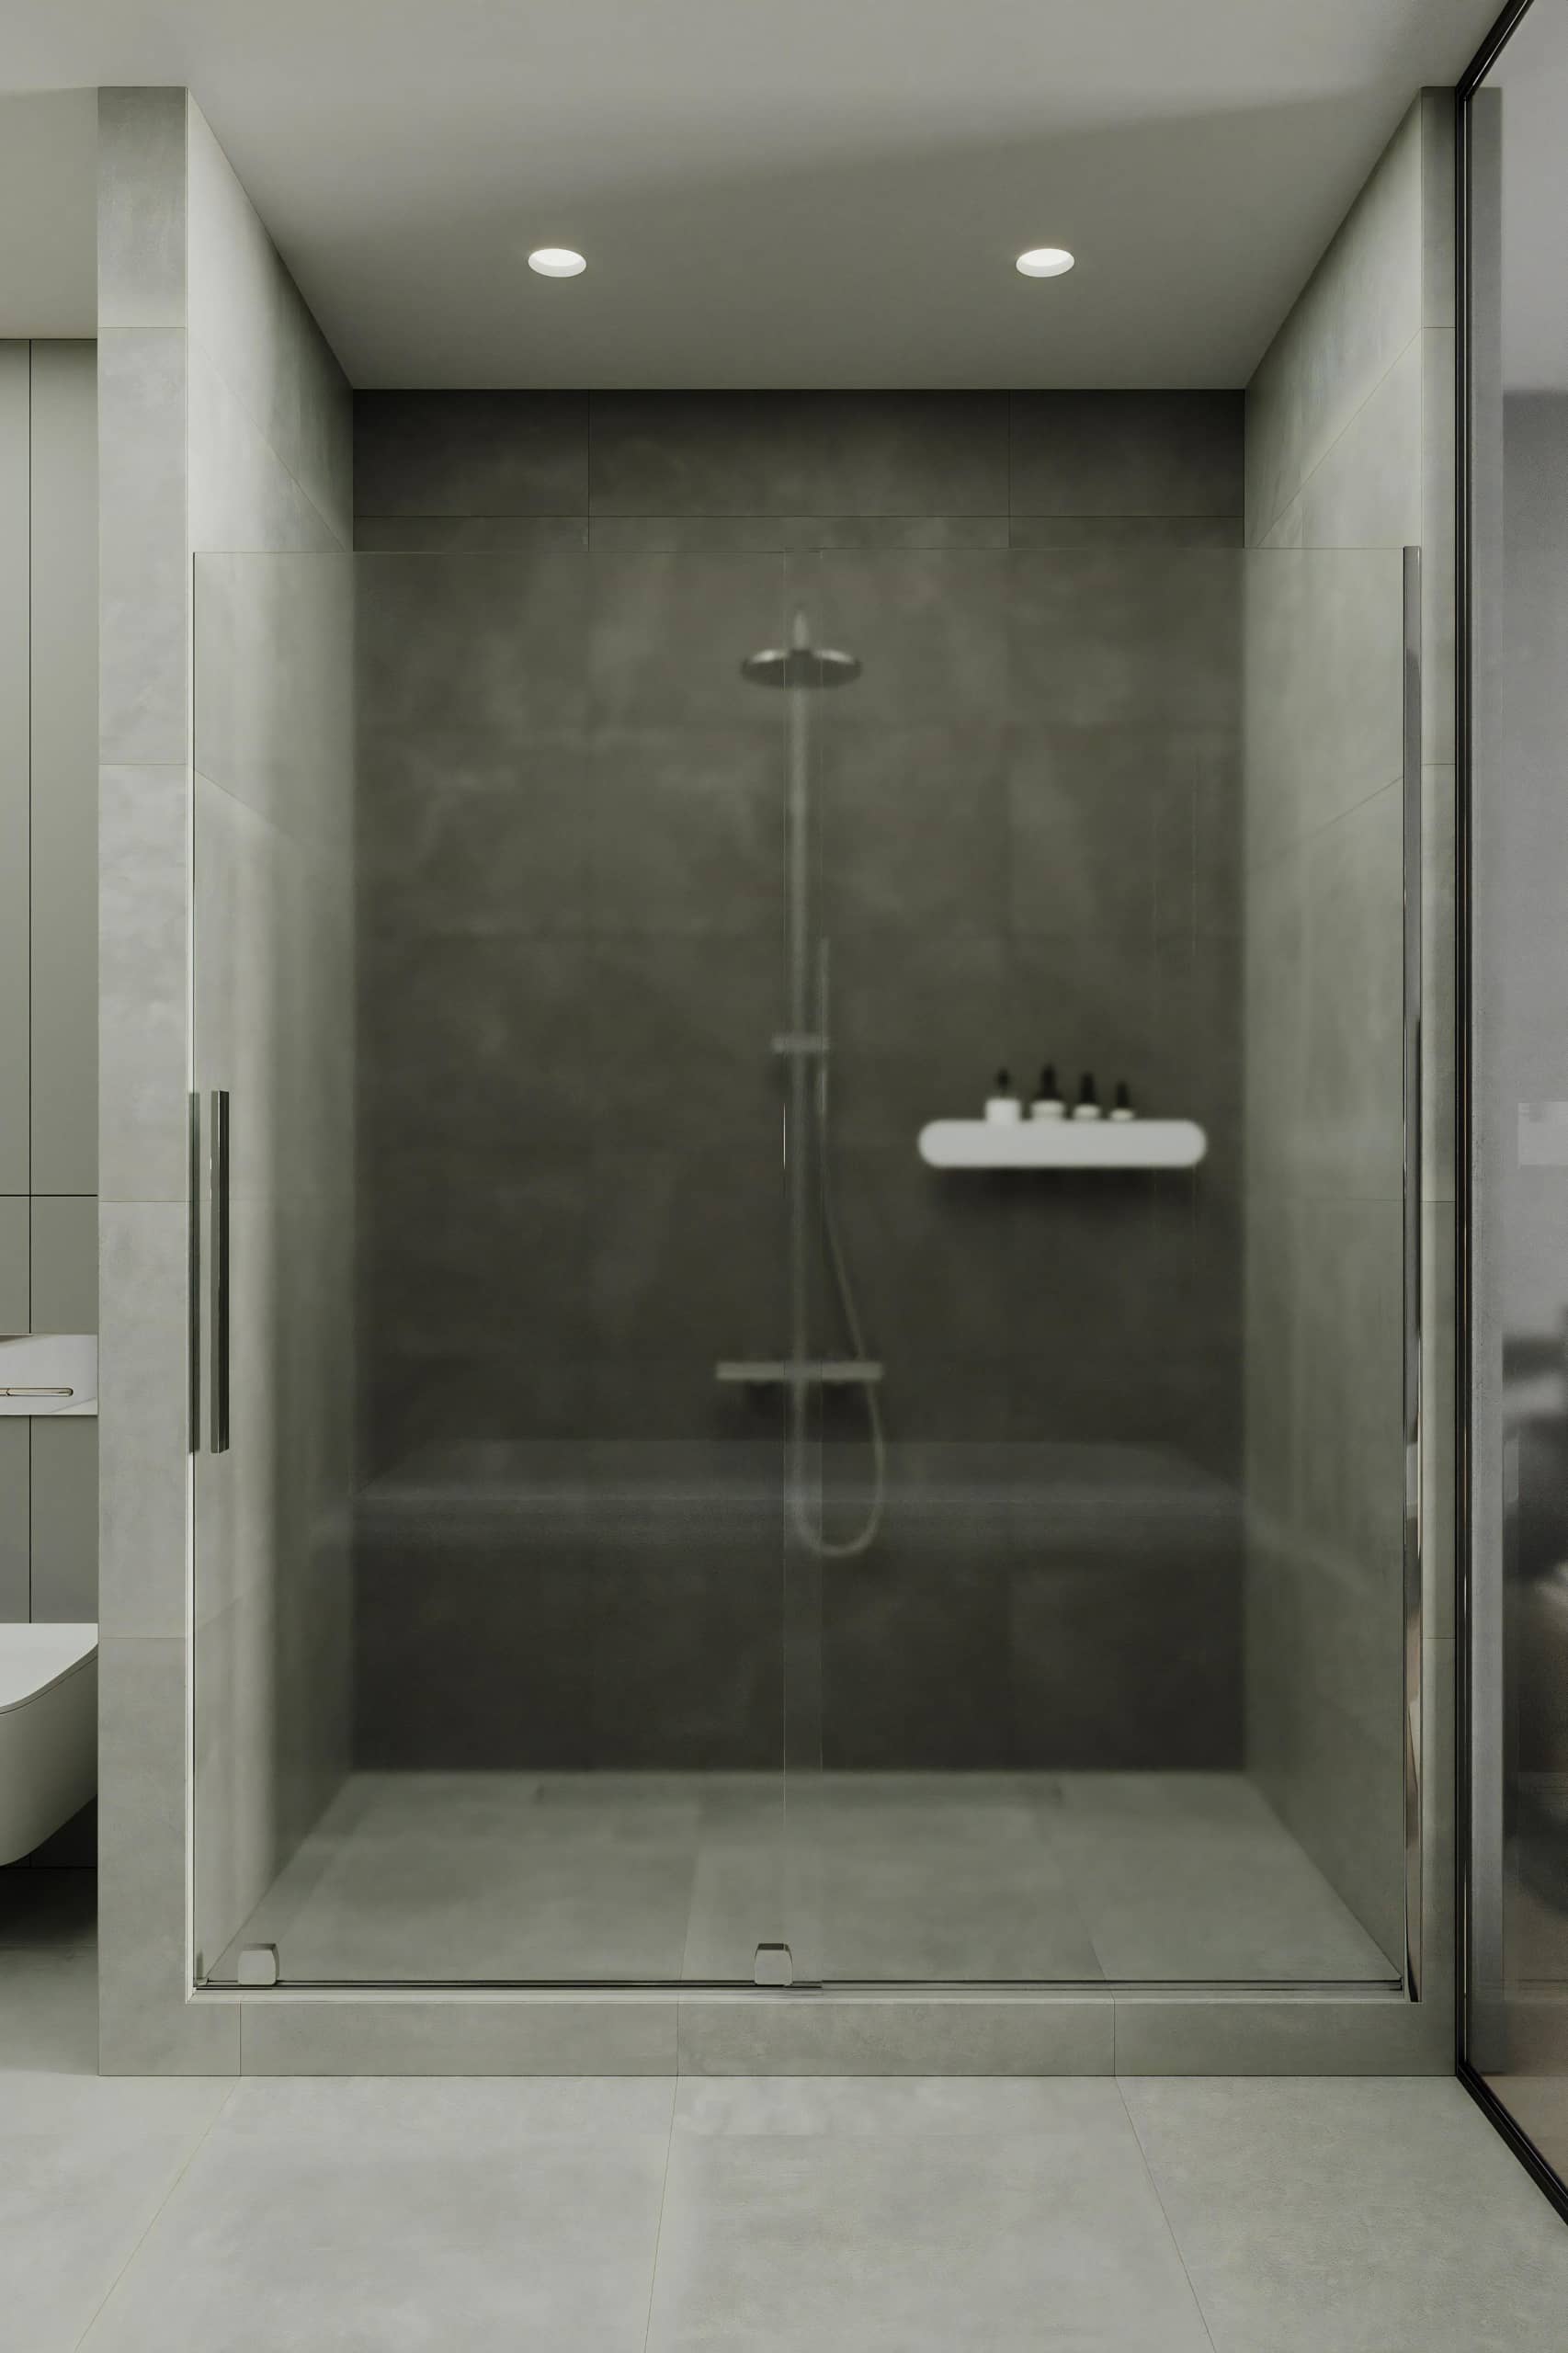 Оформление интерьера ванной комнаты в белый цвет. Фото № 72125.